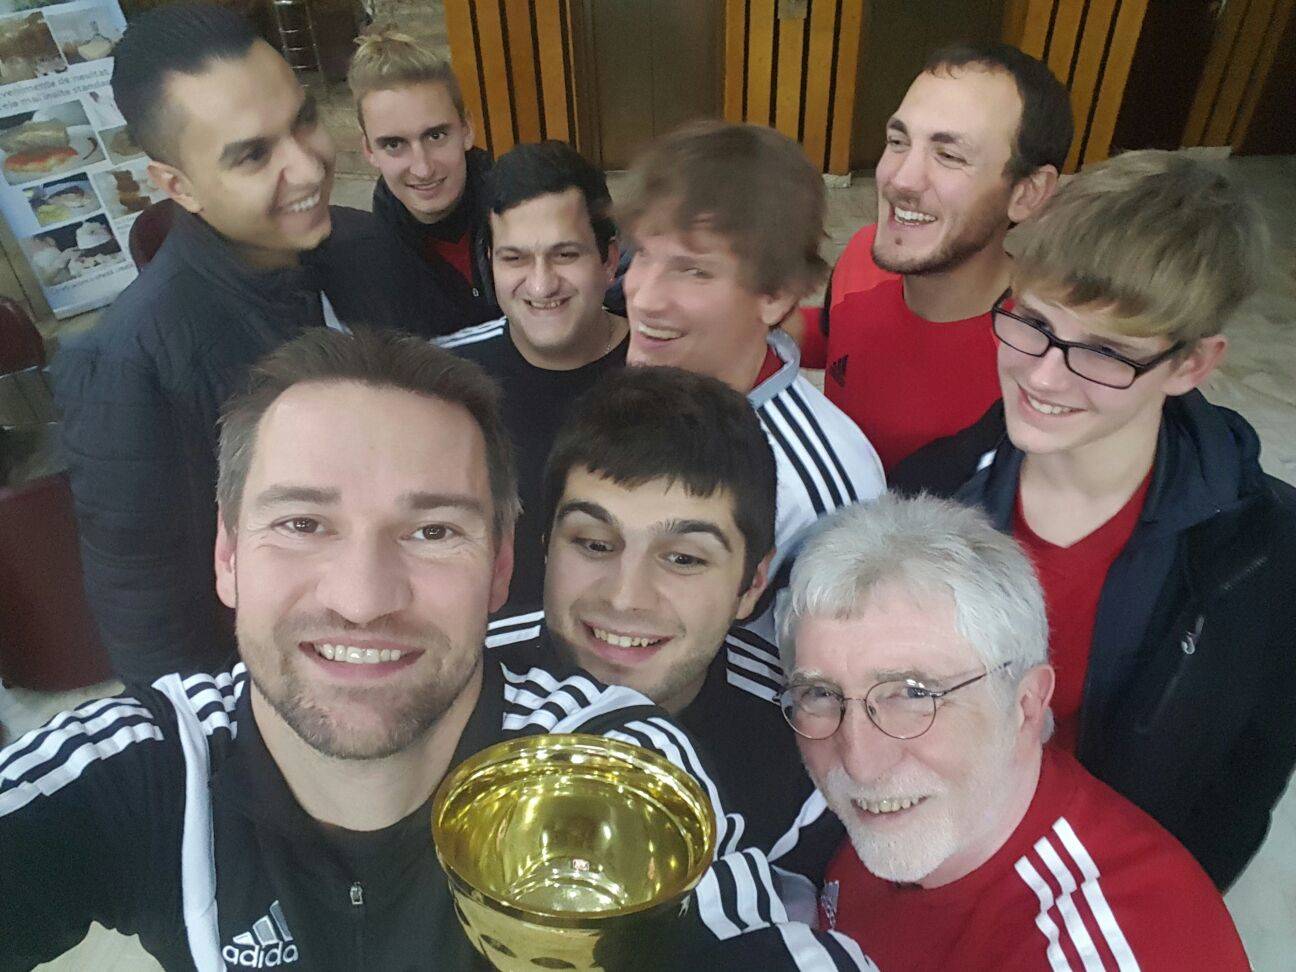 Blindenfußball Nationalmannschaft mit Pokal als Selfie von schräg oben